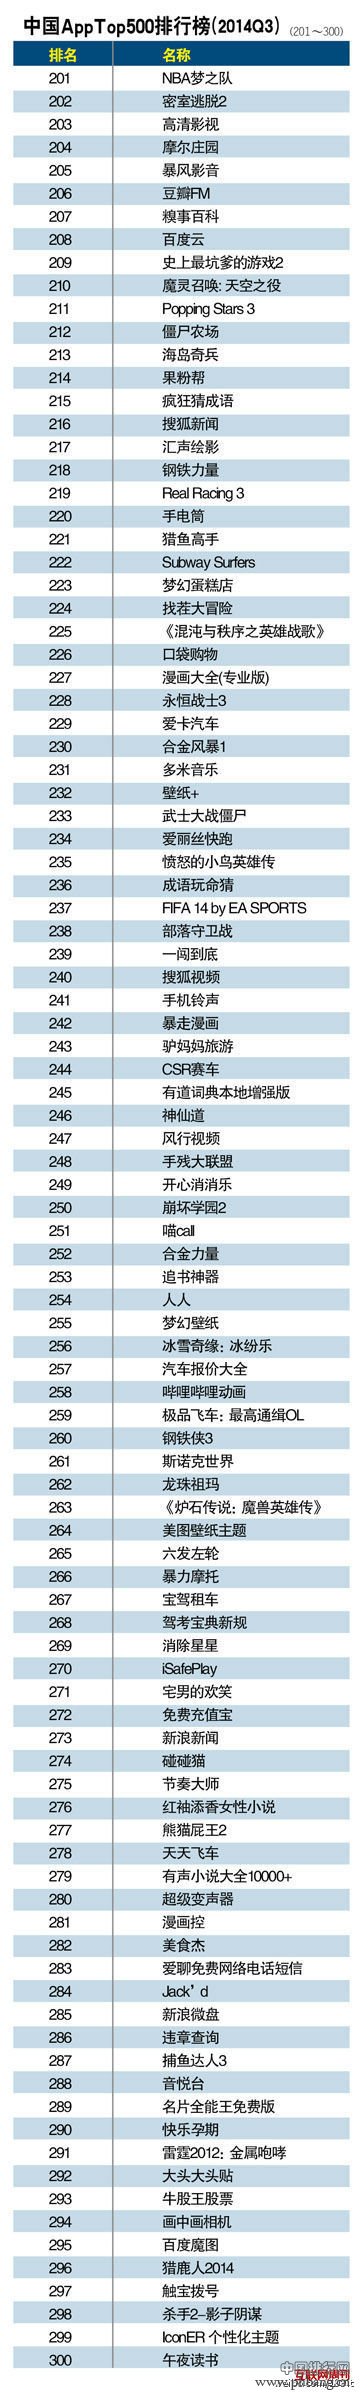 2014中国App排行榜Top500排名